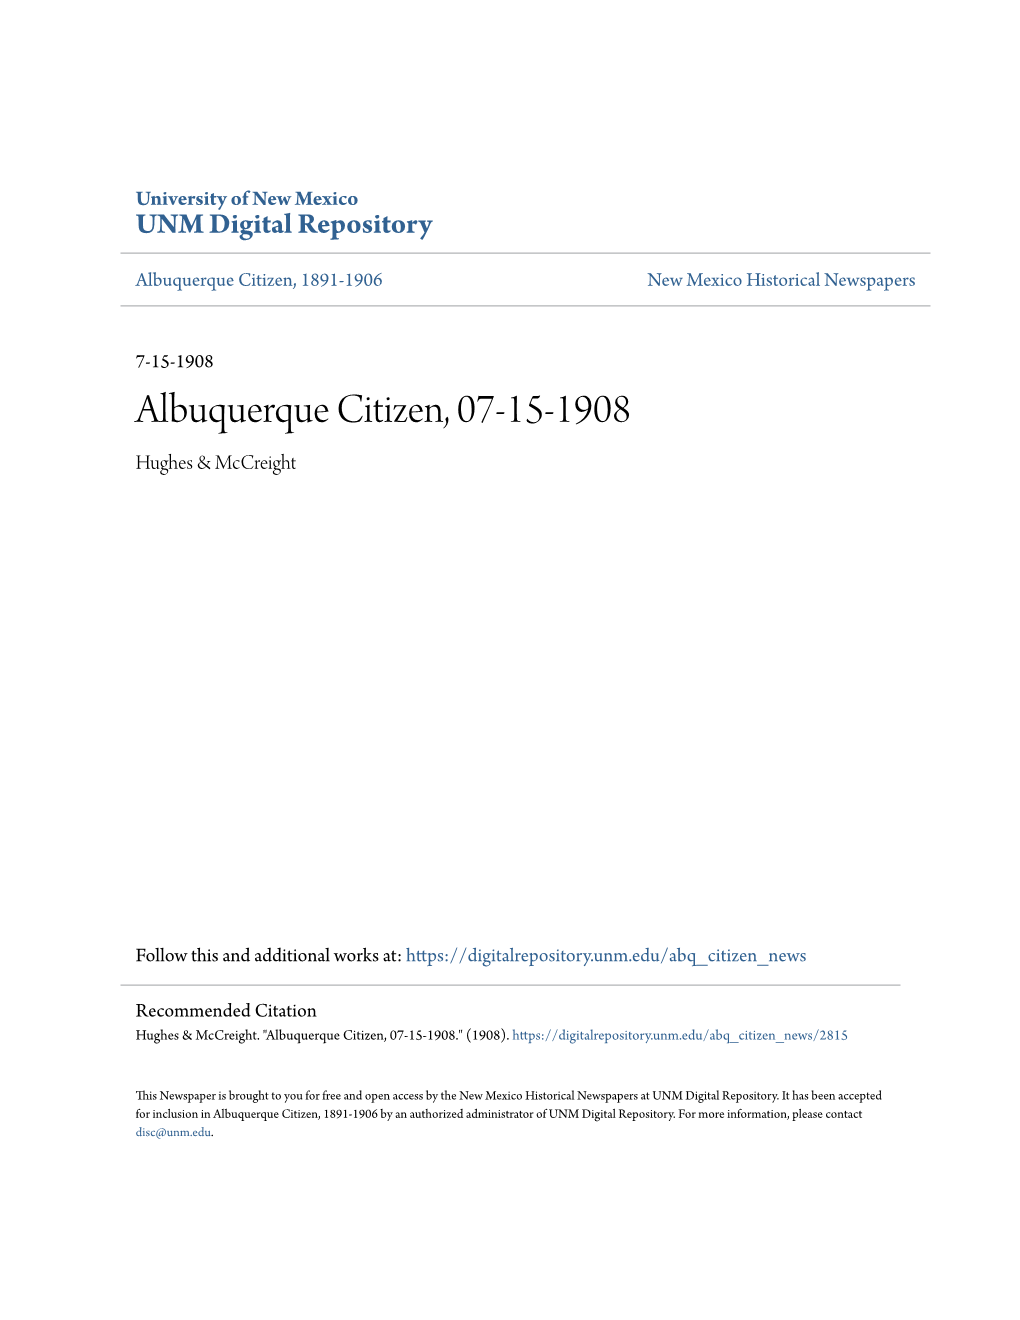 Albuquerque Citizen, 07-15-1908 Hughes & Mccreight